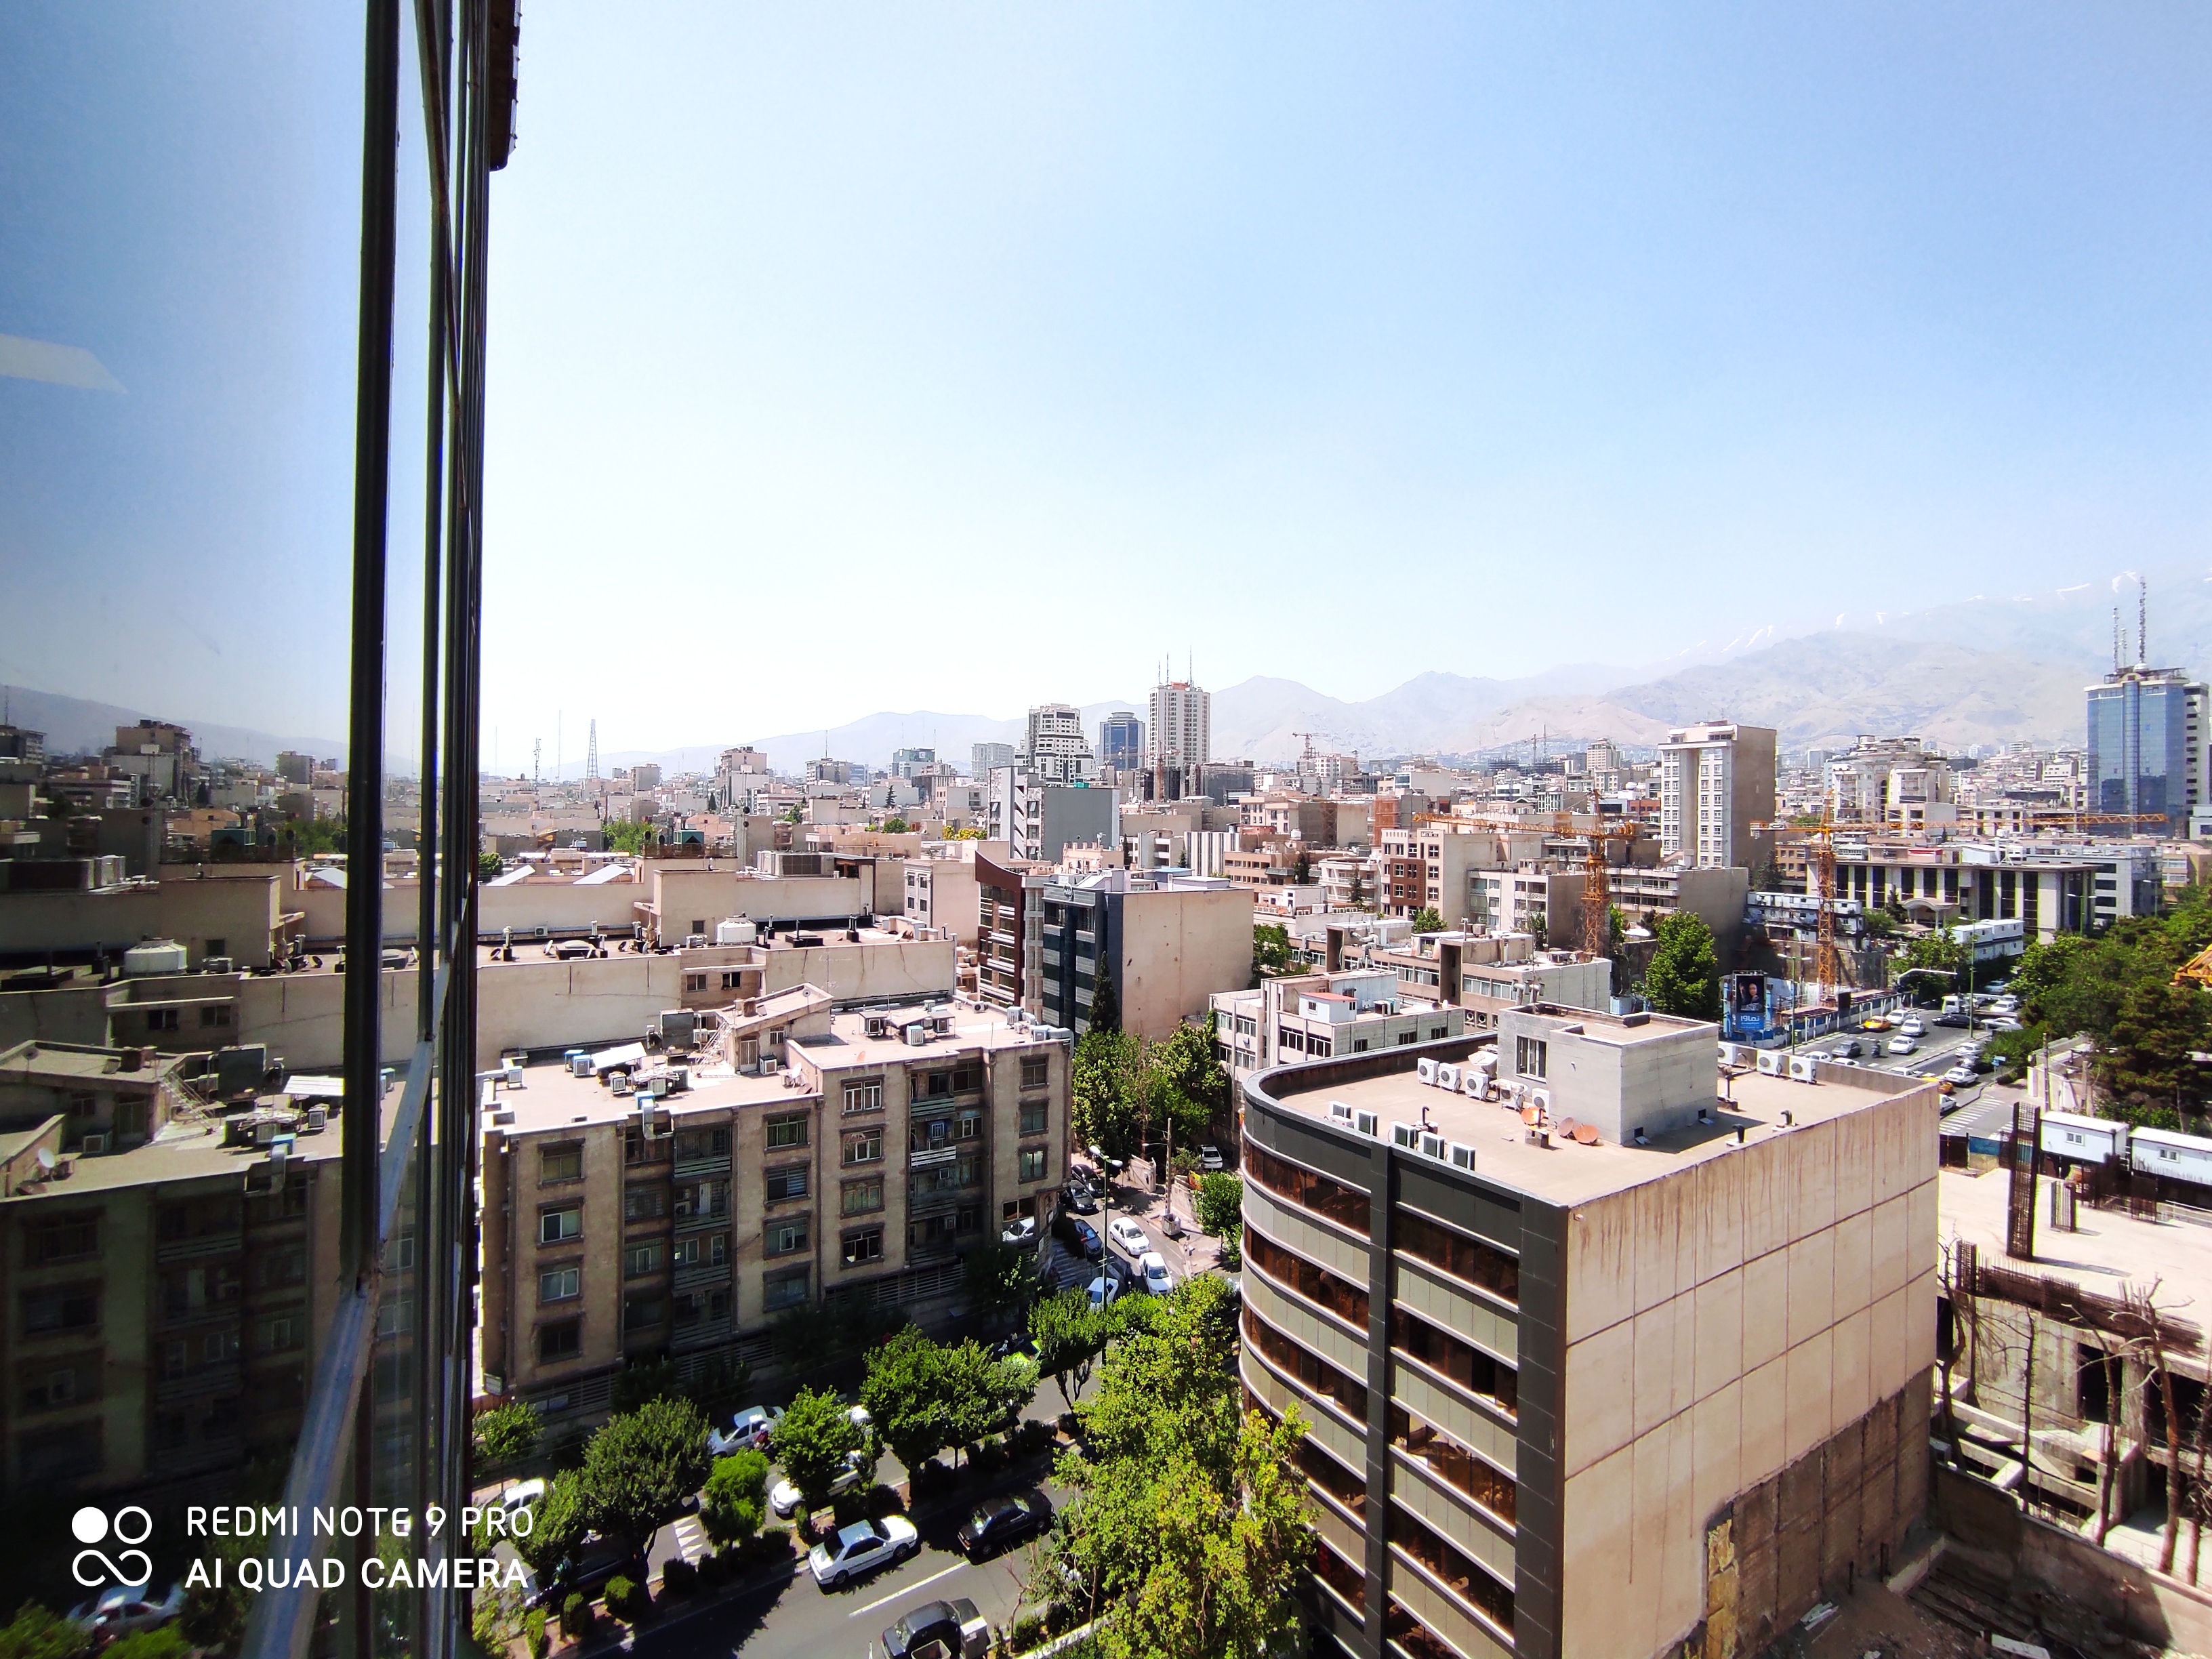 نمونه عکس ردمی نوت 9 پرو - اولتراواید - ساختمان و خیابان